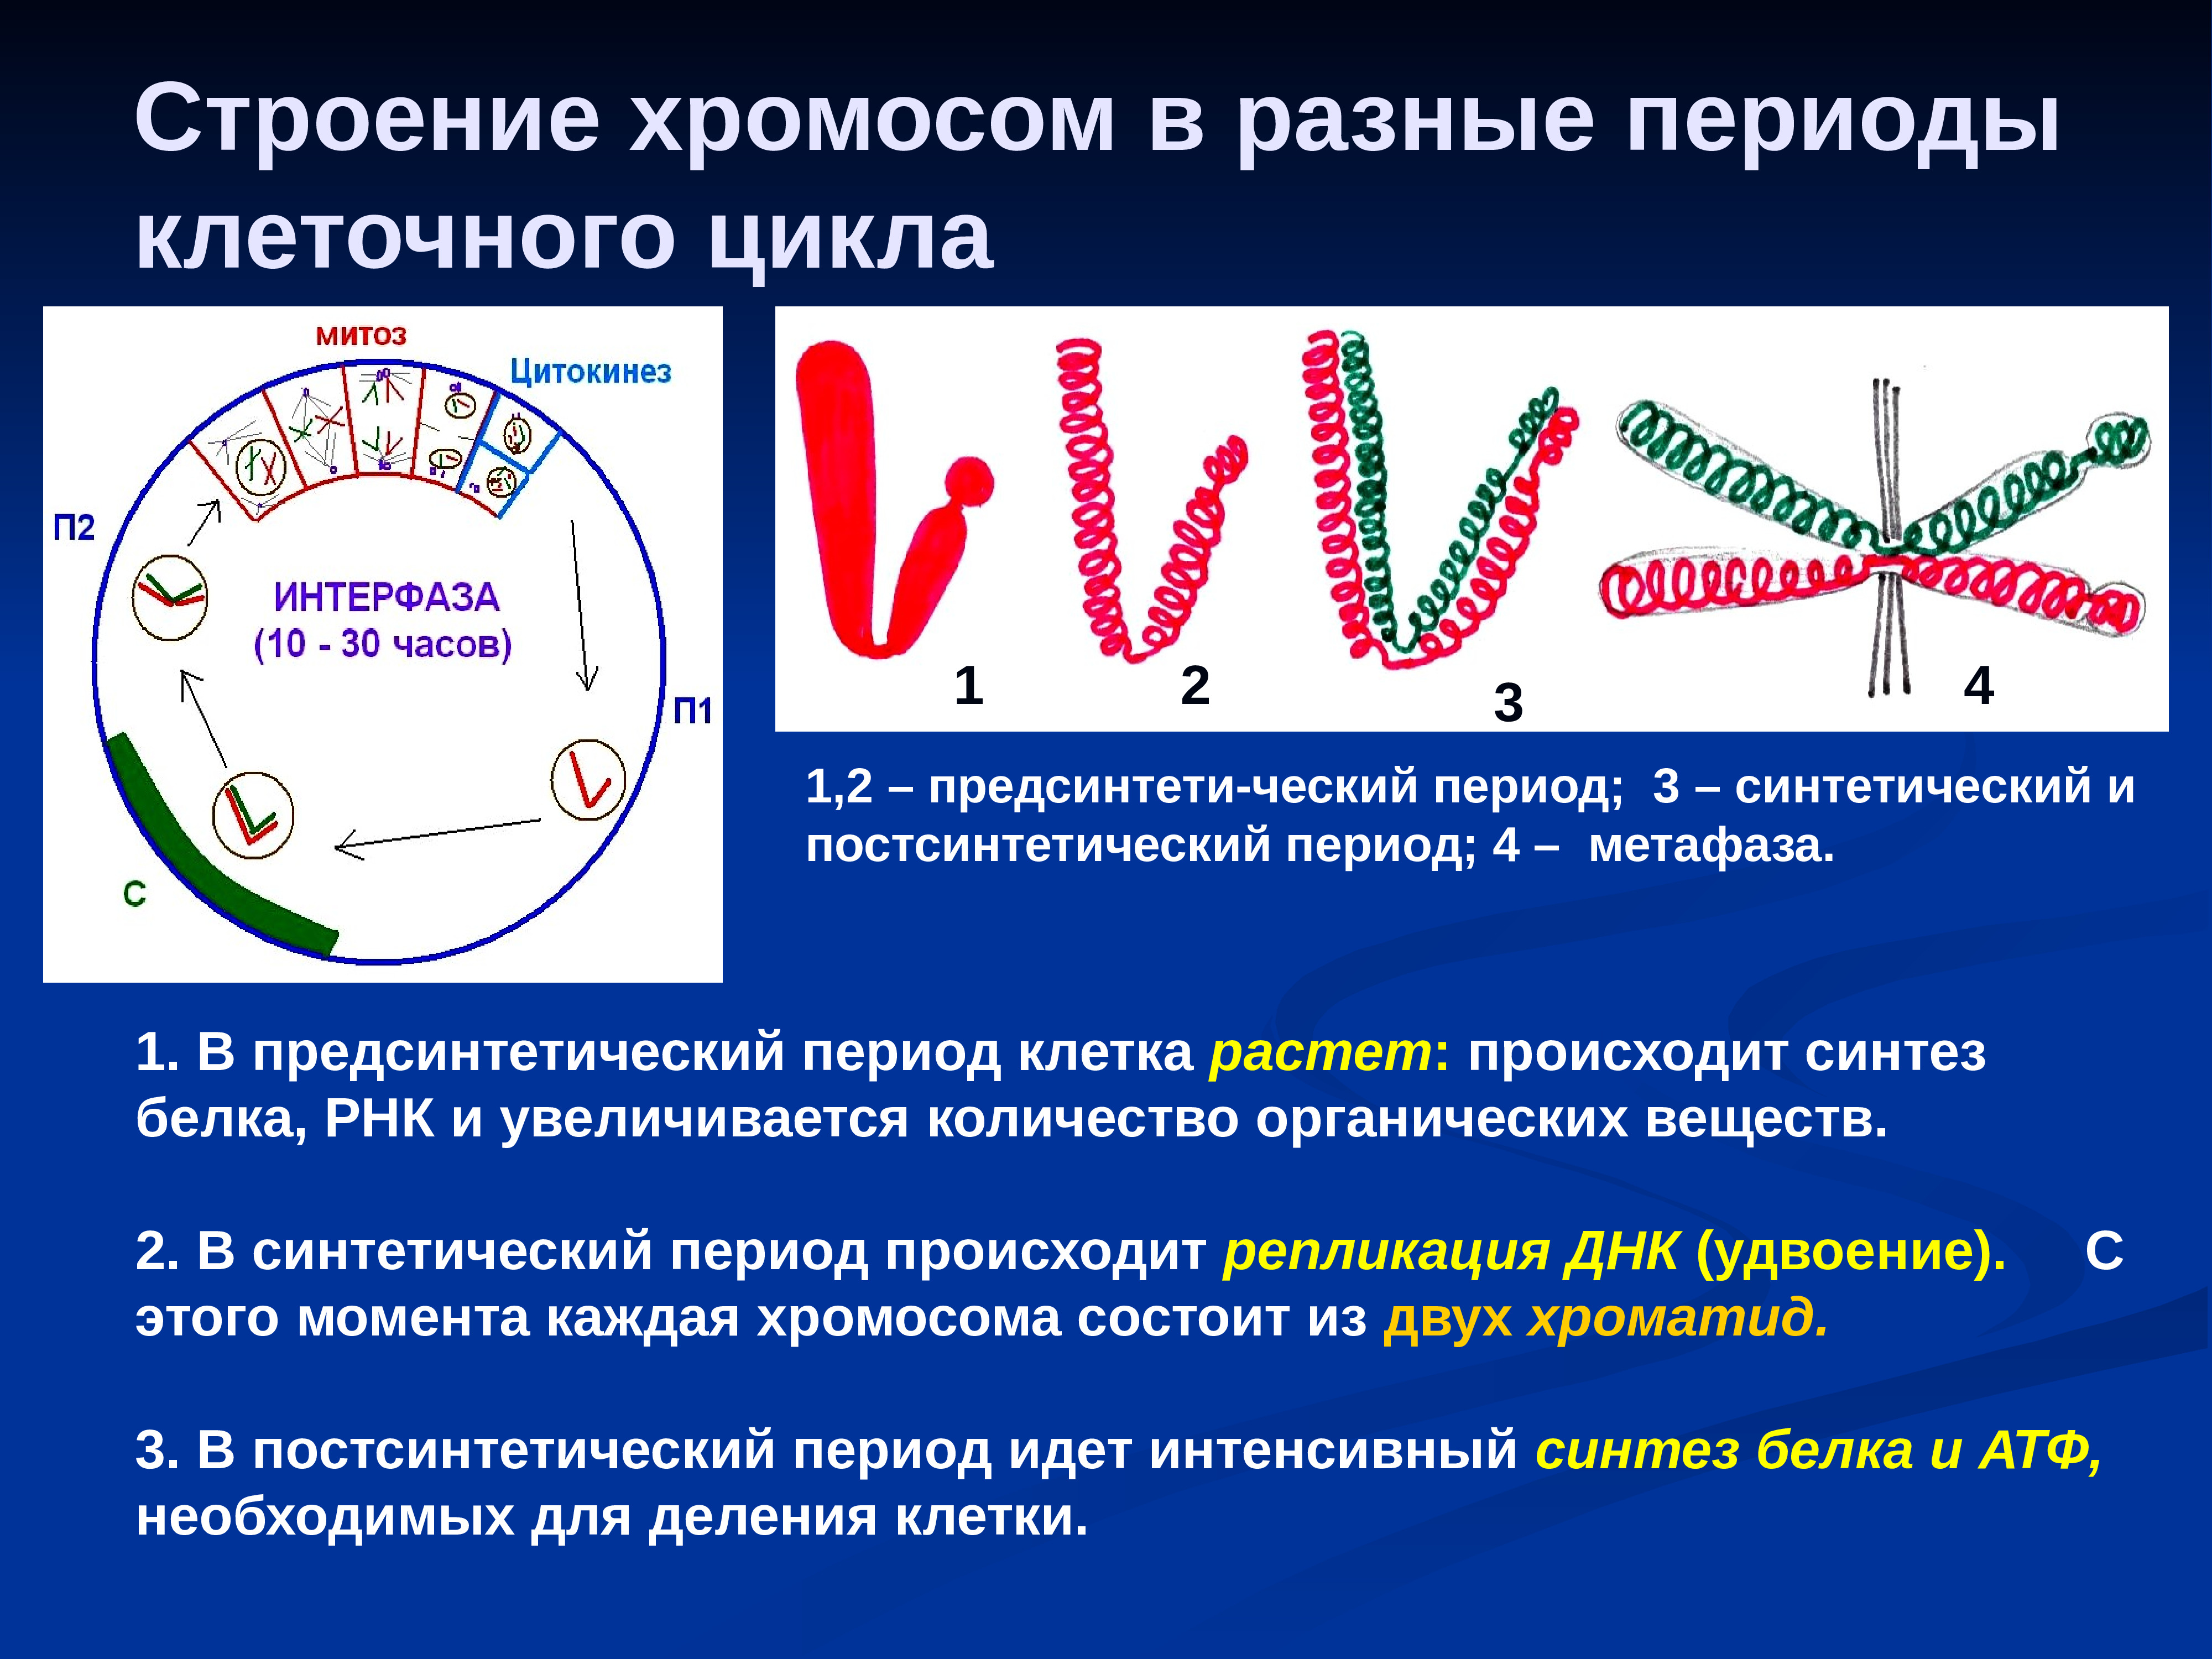 Удваивается молекула днк. Строение хромосомы. Строение хромосом в разные периоды клеточного цикла. Хромосом в разные периоды клеточного деления. Изменение хромосом в клеточном цикле.